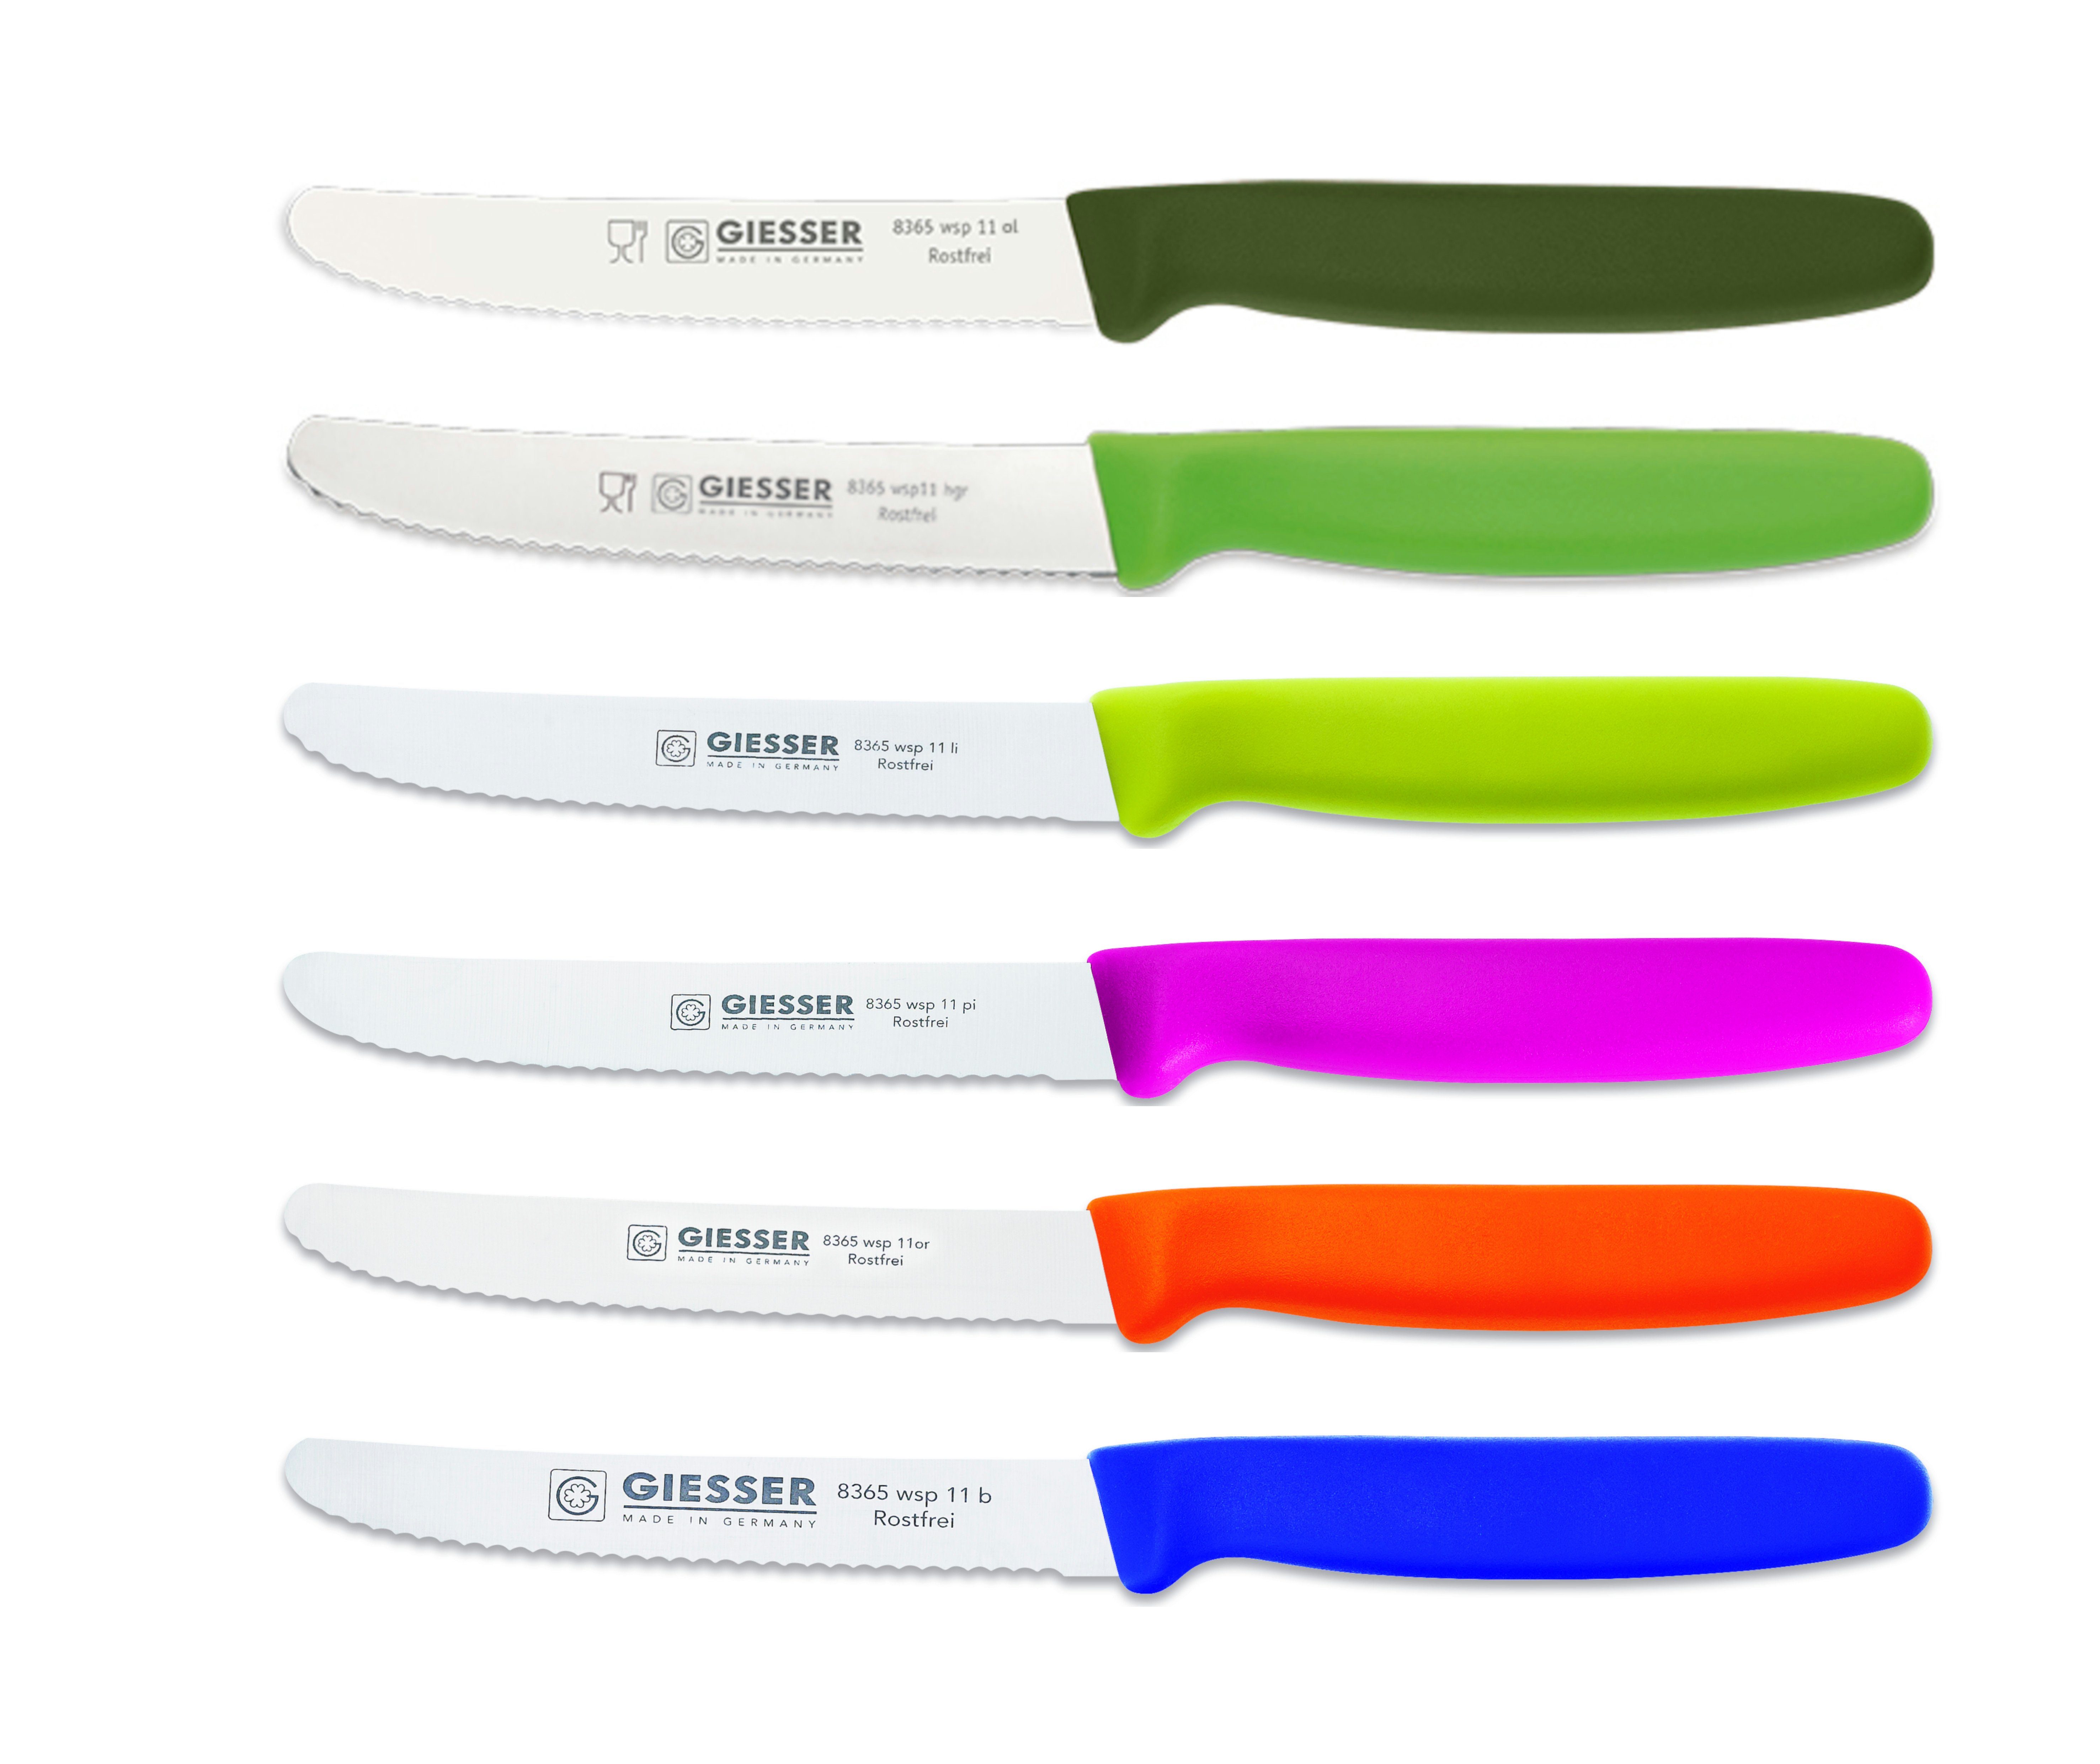 Giesser Messer Tomatenmesser 8365 gemischt; Brötchenmesser 6er Wellenschliff; wsp Set 3mm Scharf 11-6, bunt extrem ol-hgr-li-pi-or-b